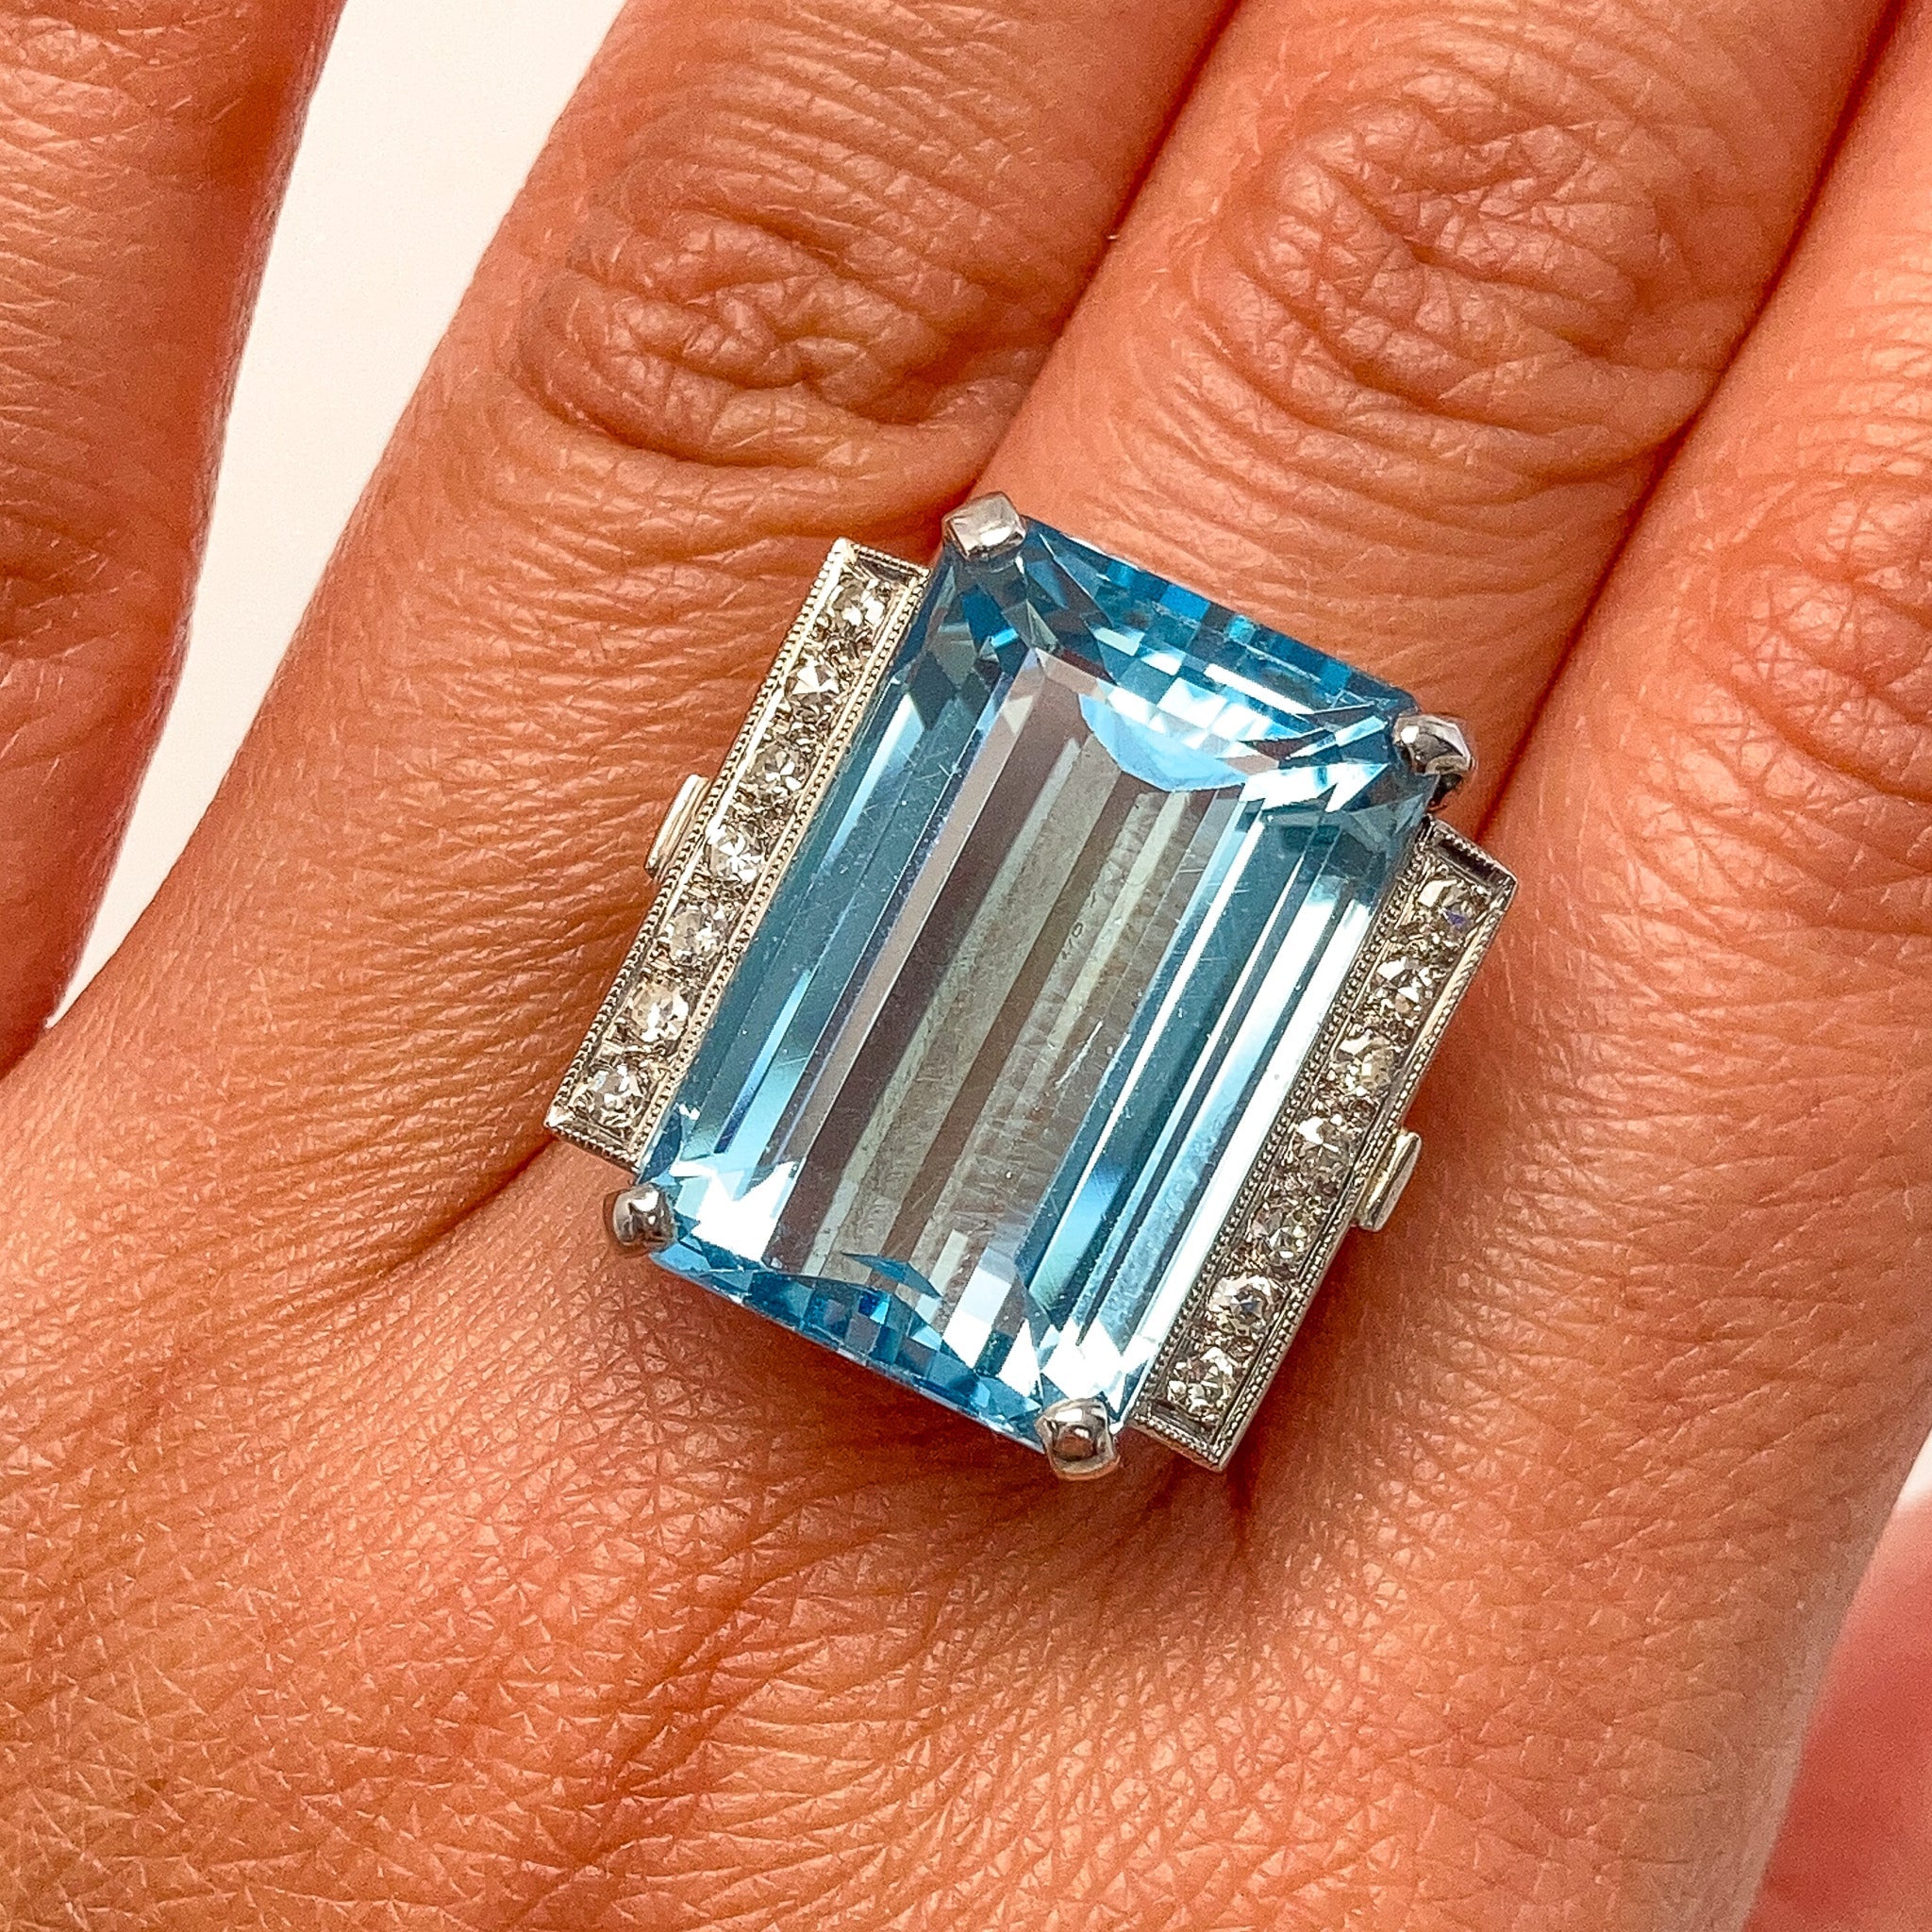 Diamond Aquamarine Ring